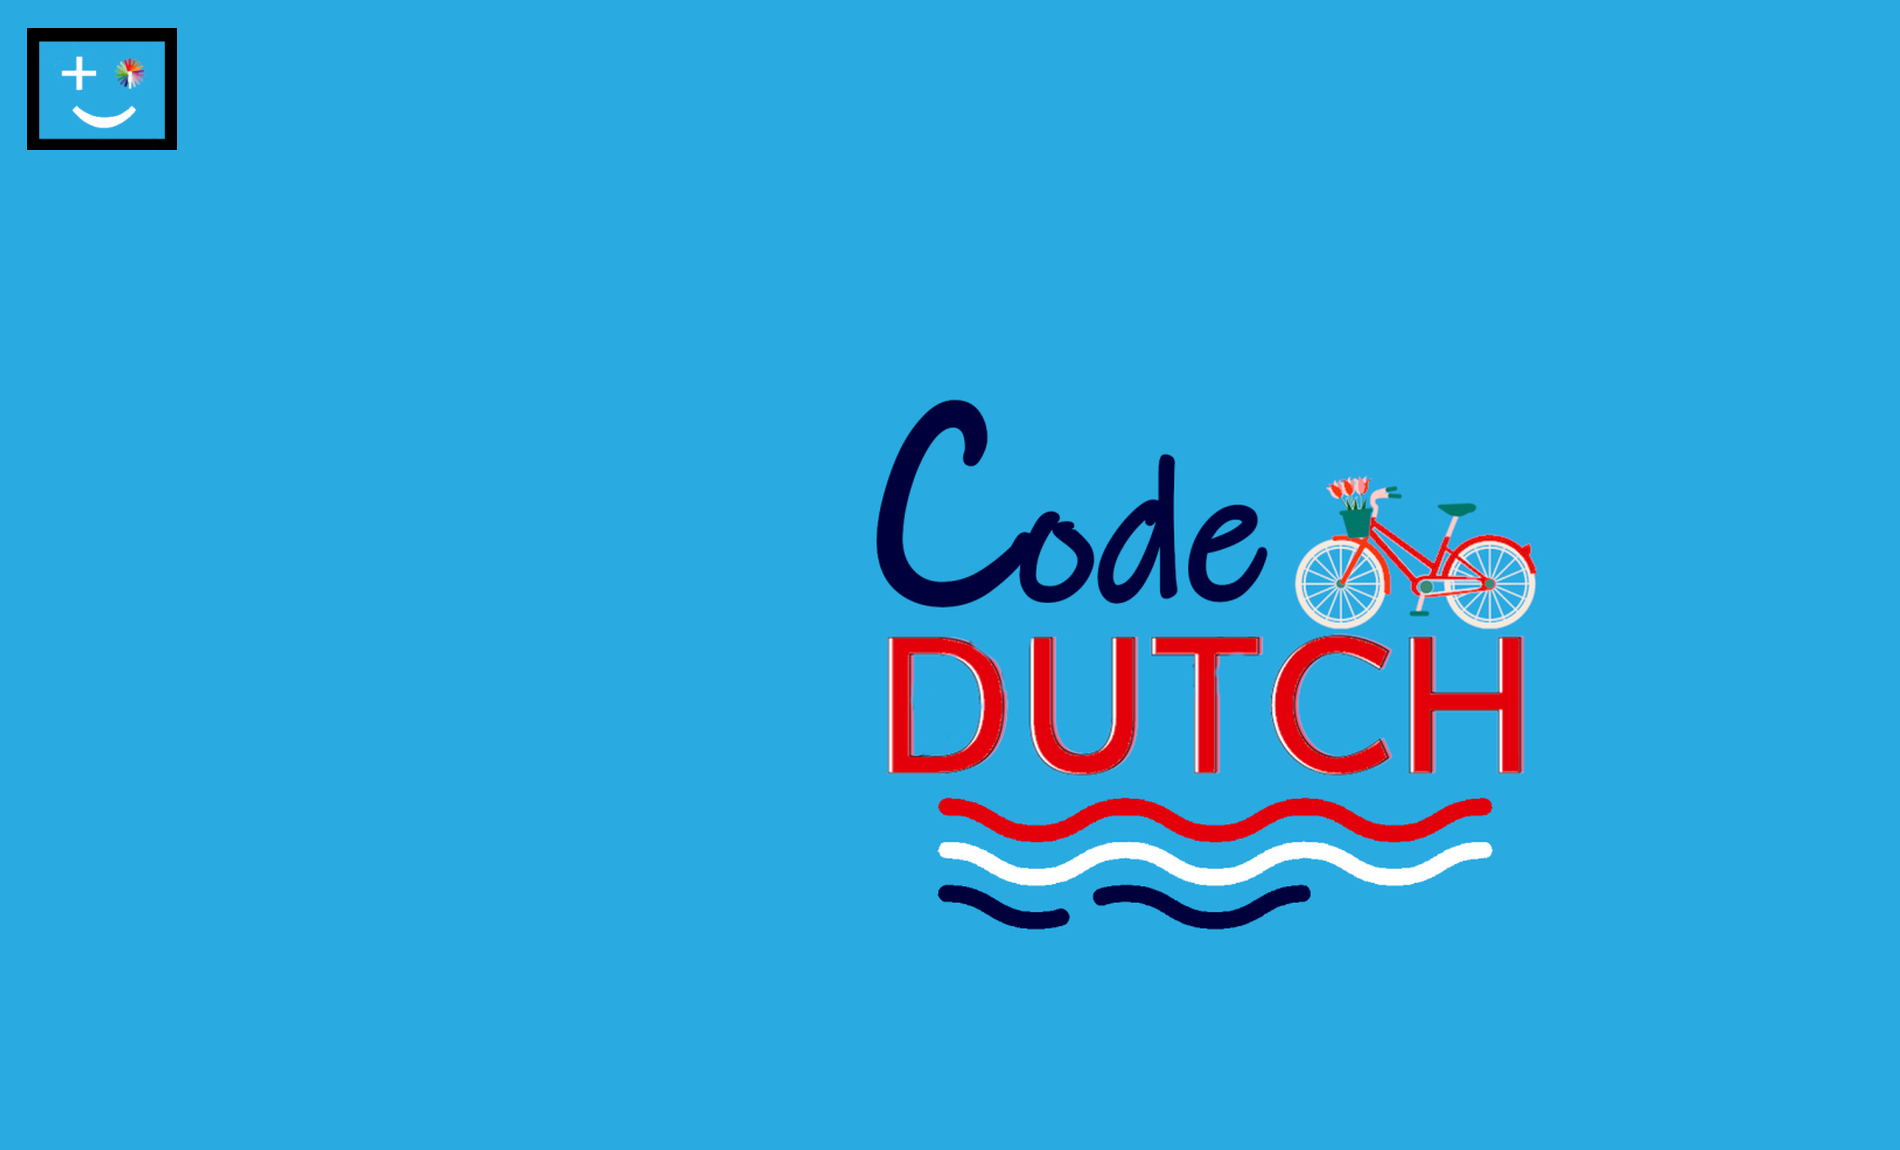 Code Dutch | de twee gezichten van Nederland | DoesPlus!